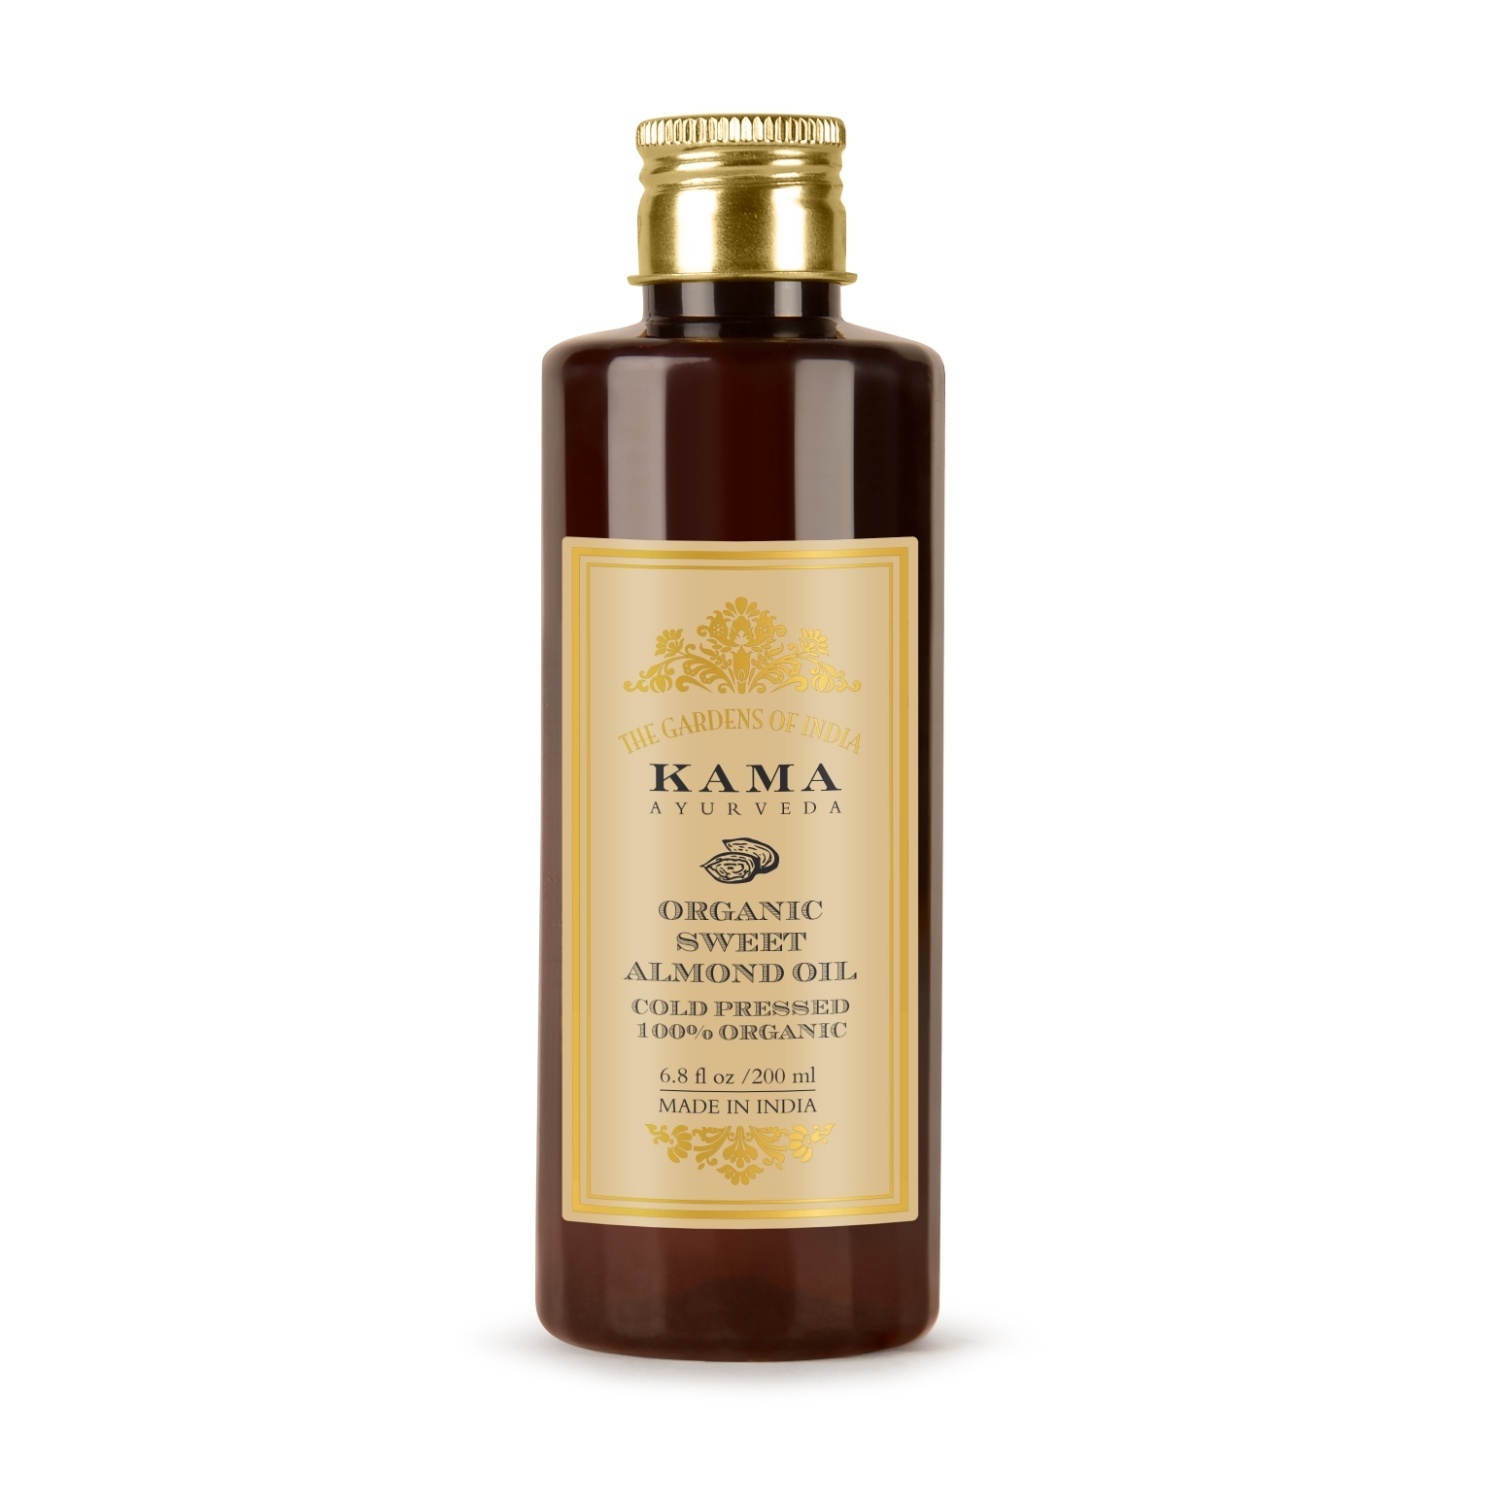 KAMA Ayurveda | Kama Ayurveda Organic Sweet Almond Oil (200ml)